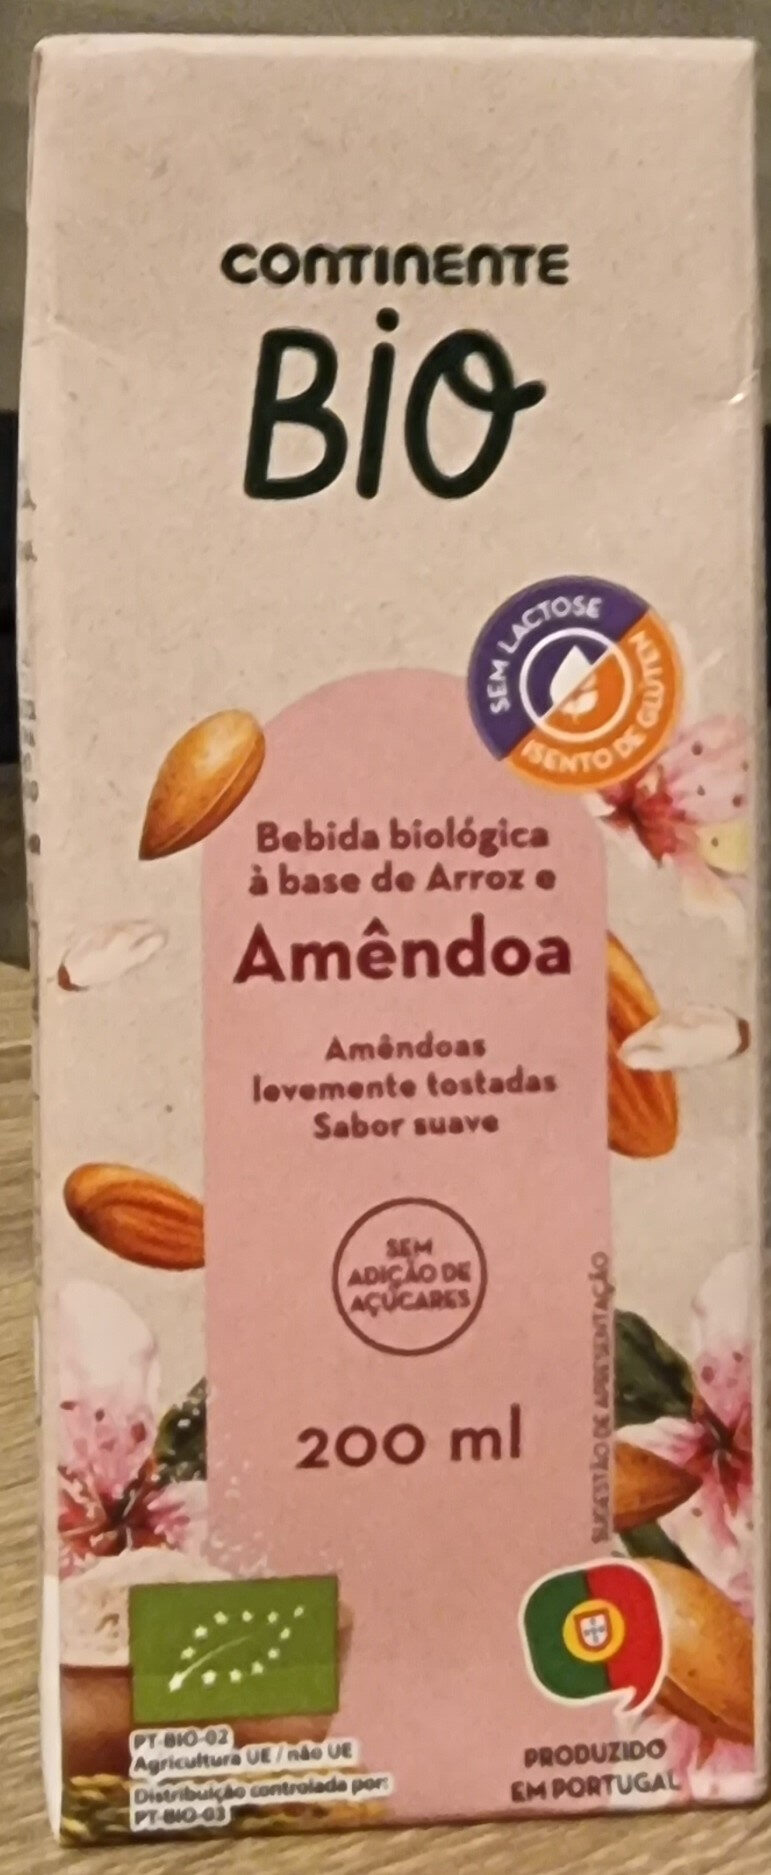 Bebida Biológica à base de Arroz e Amêndoa - Product - pt